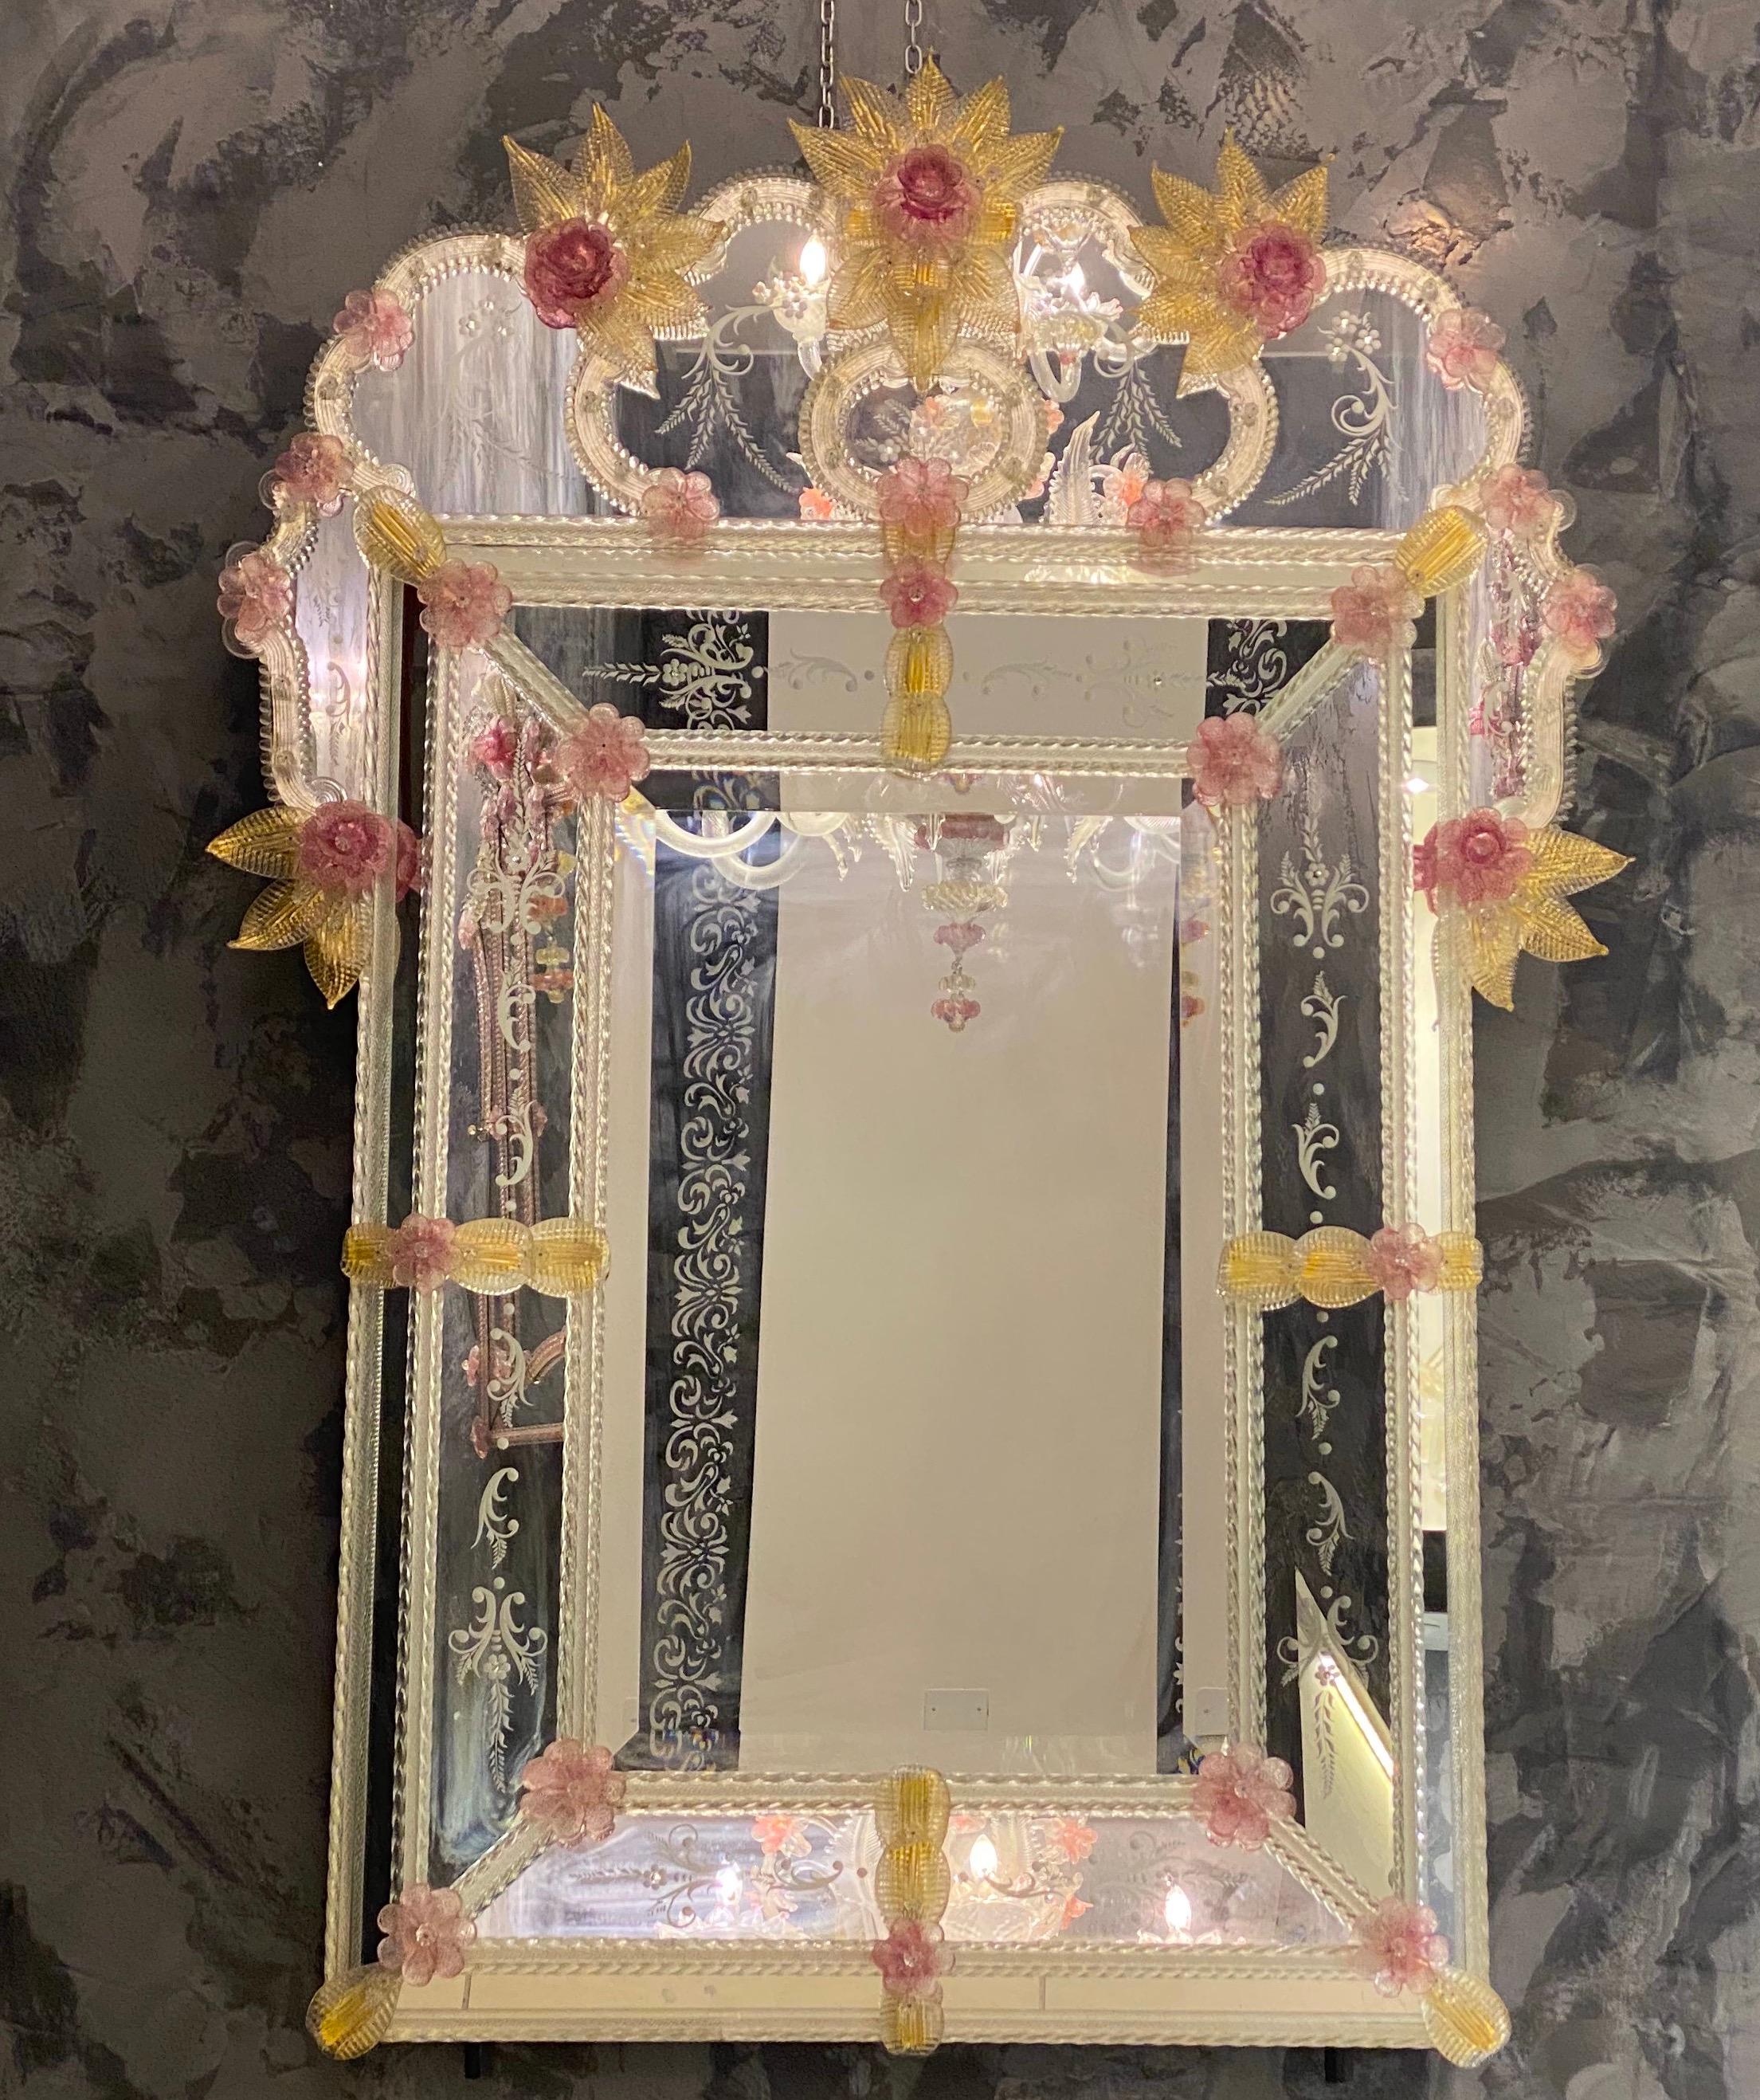 Ce charmant miroir vénitien présente des motifs floraux gravés qui ornent le cadre réfléchissant. Le long des bords du cadre se trouvent des accents de corde en verre et de nombreuses fleurs roses en verre et des feuilles d'or. 
Exécuté par le